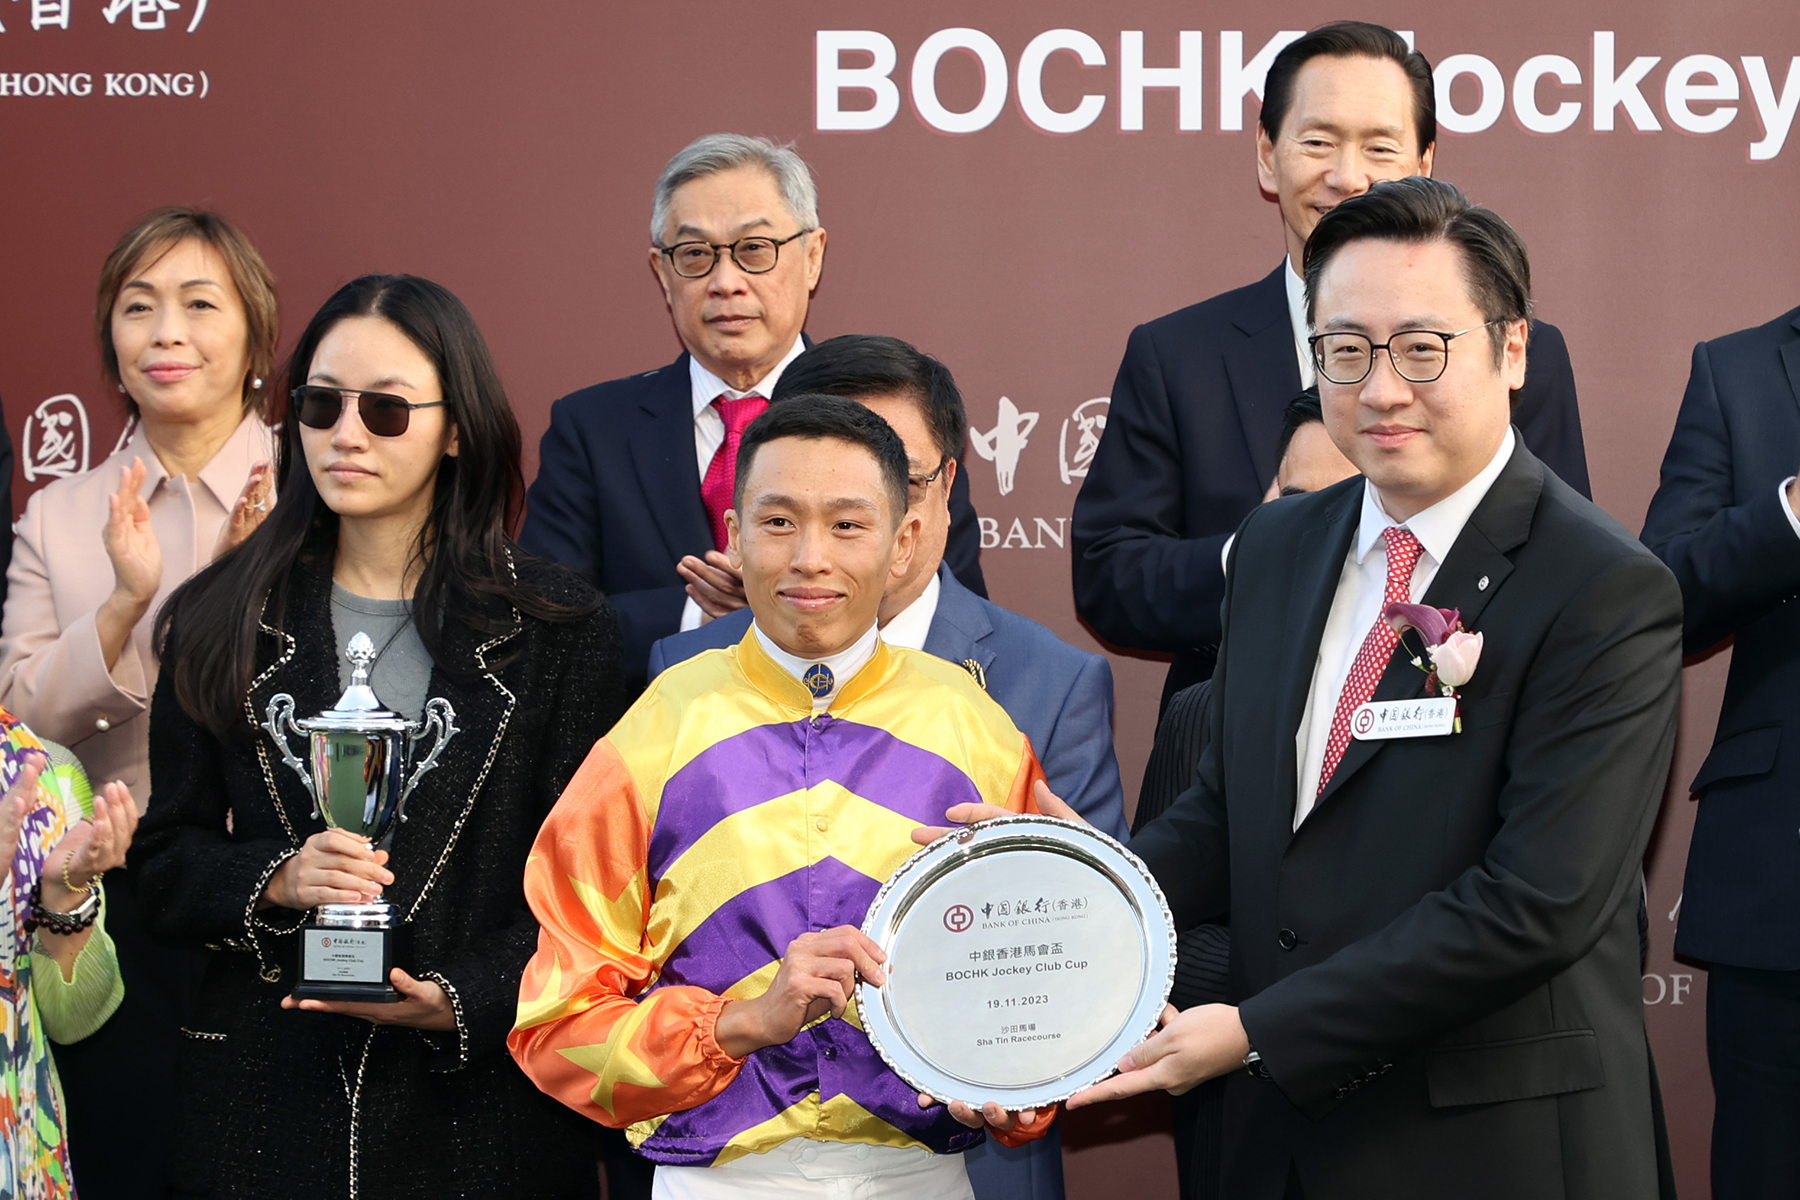 中銀香港個人數字金融產品部副總經理周國昌頒發紀念銀碟予騎師何澤堯 。